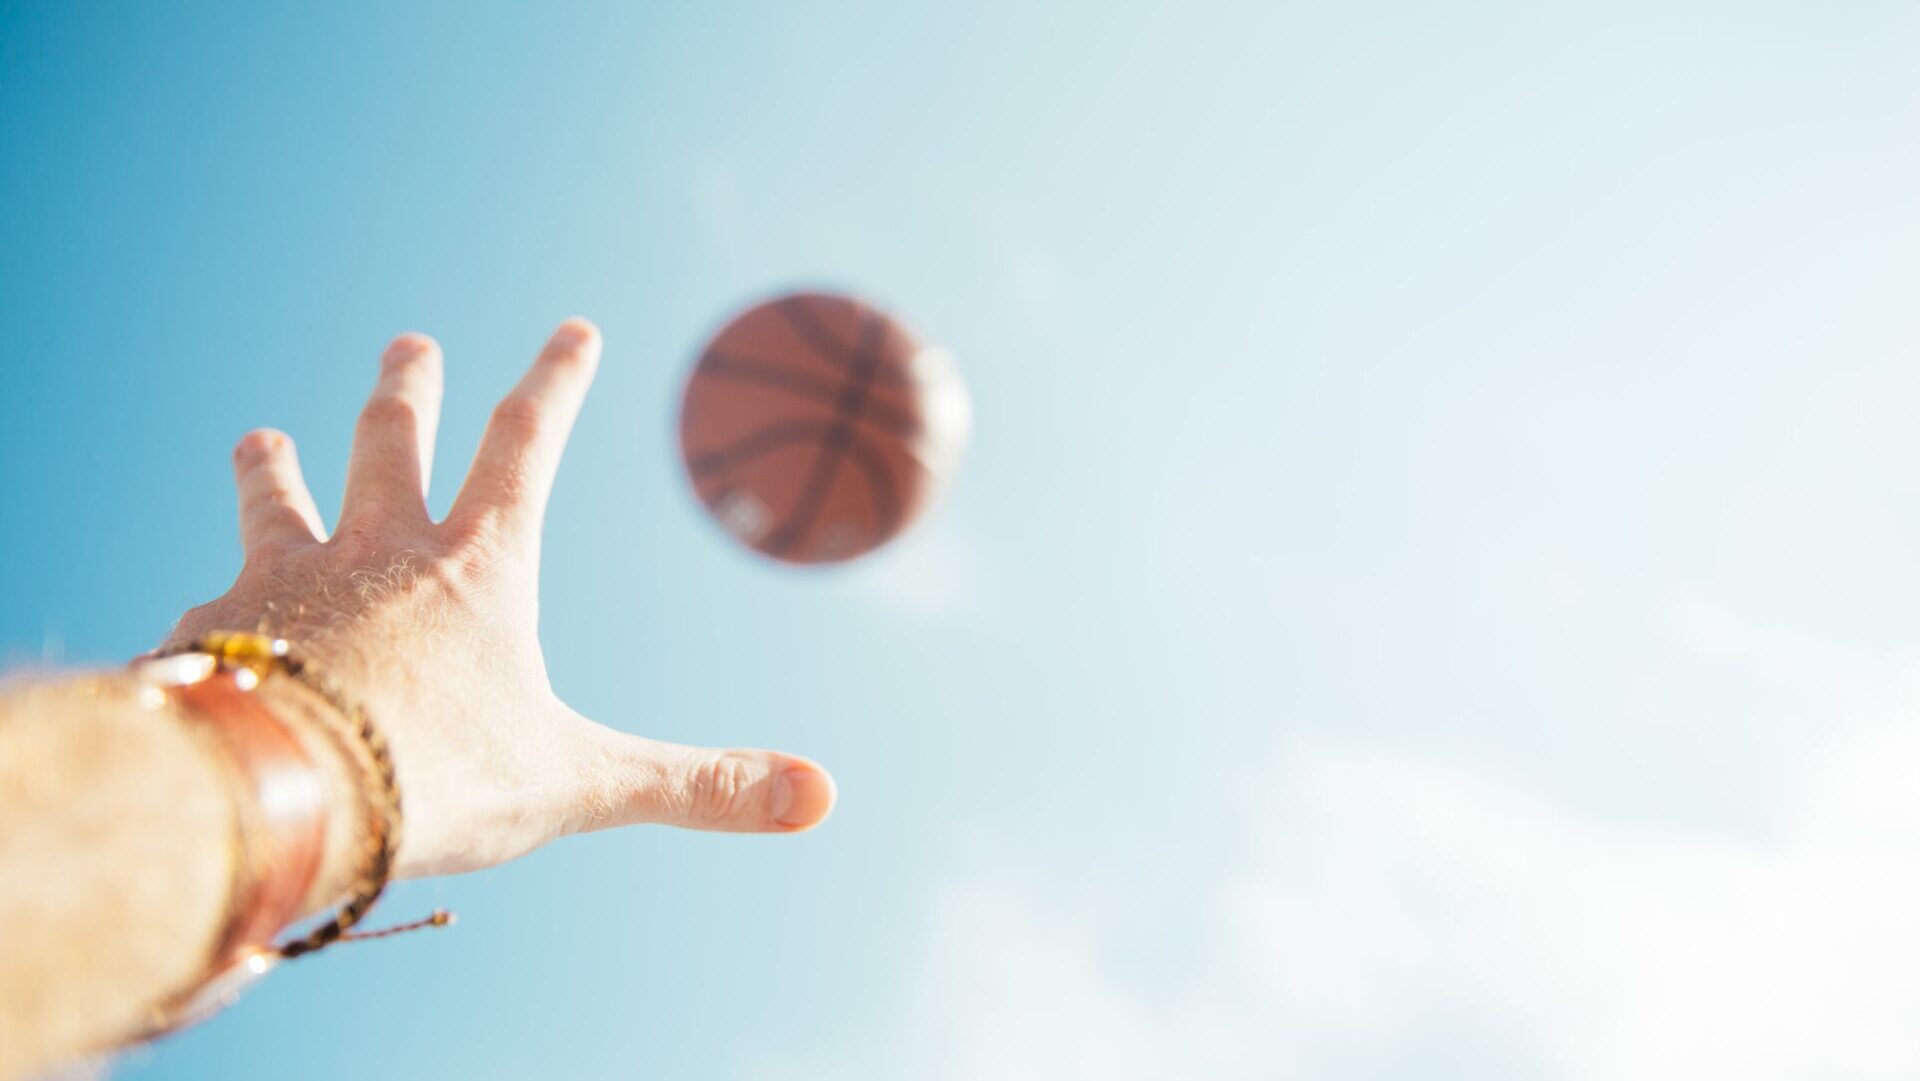 バスケットボールに手を伸ばす